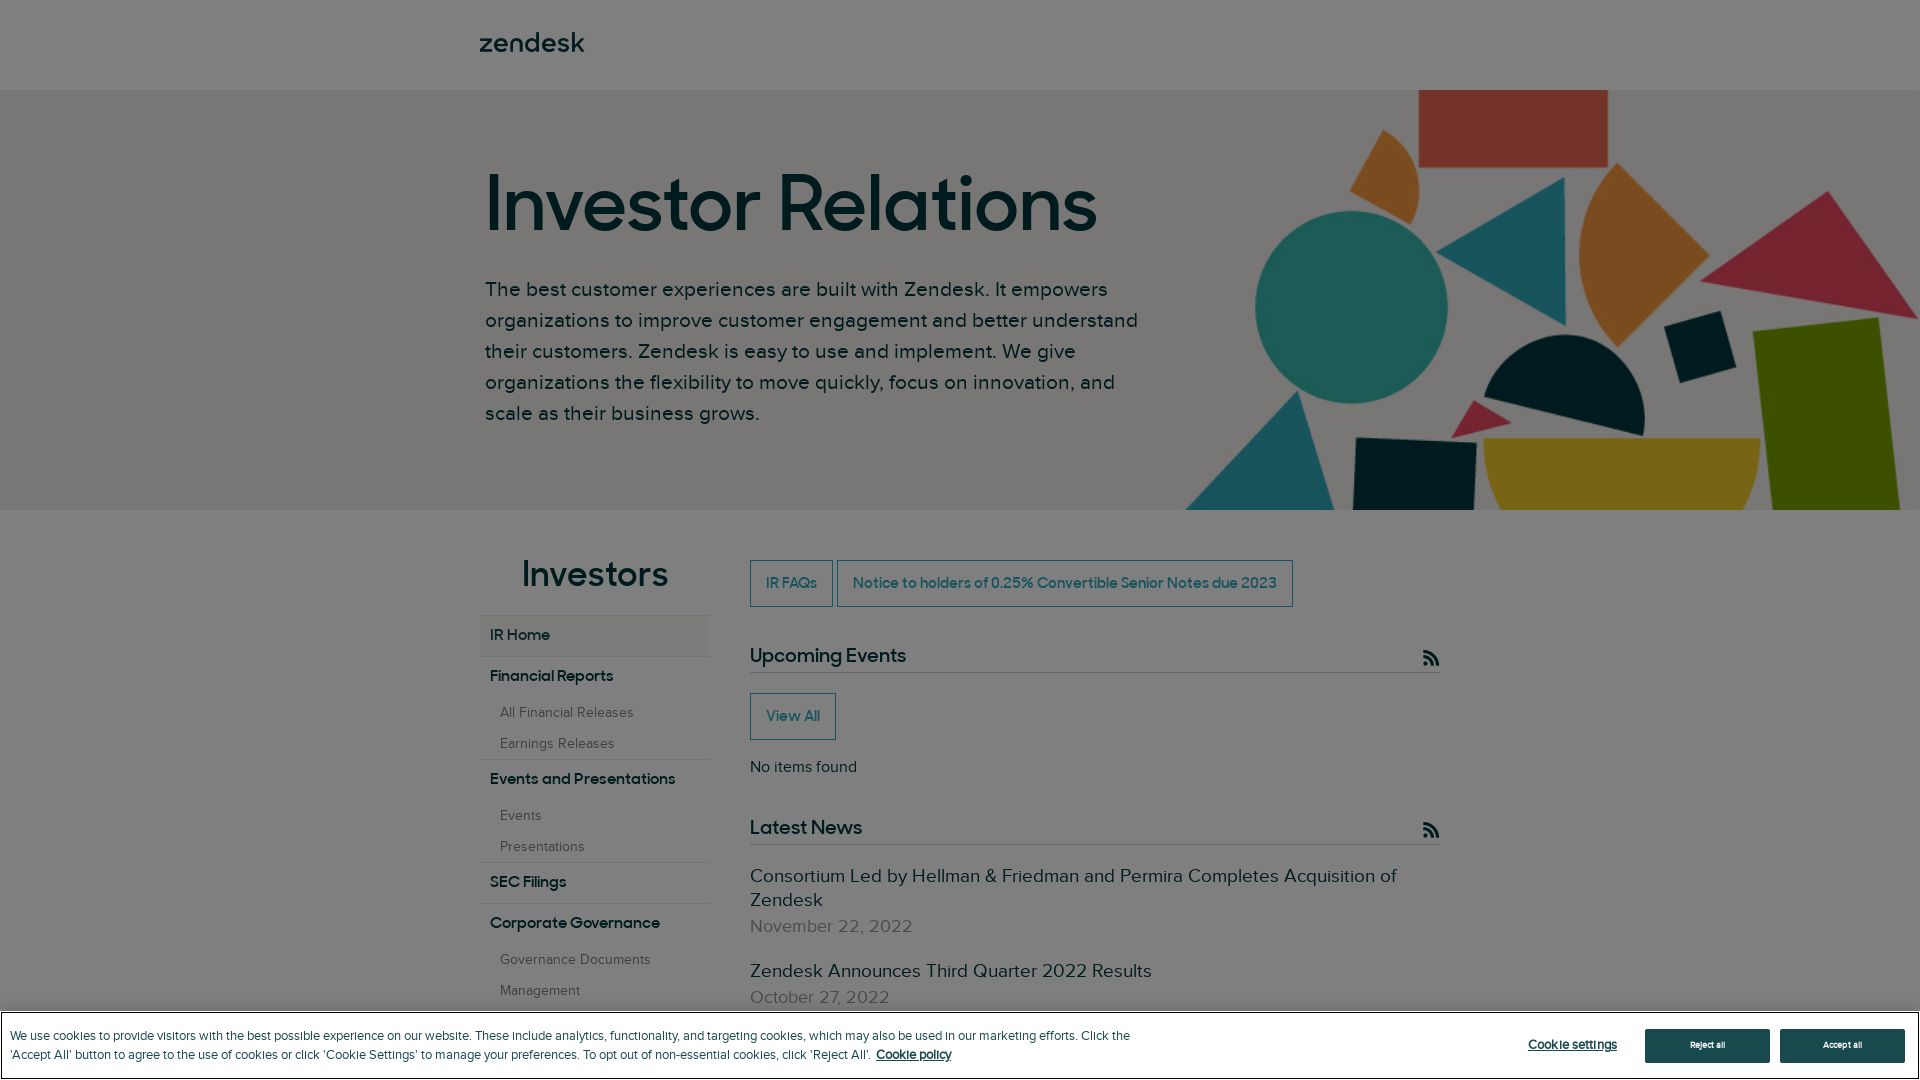 网站状态 investor.zendesk.com 是  在线的